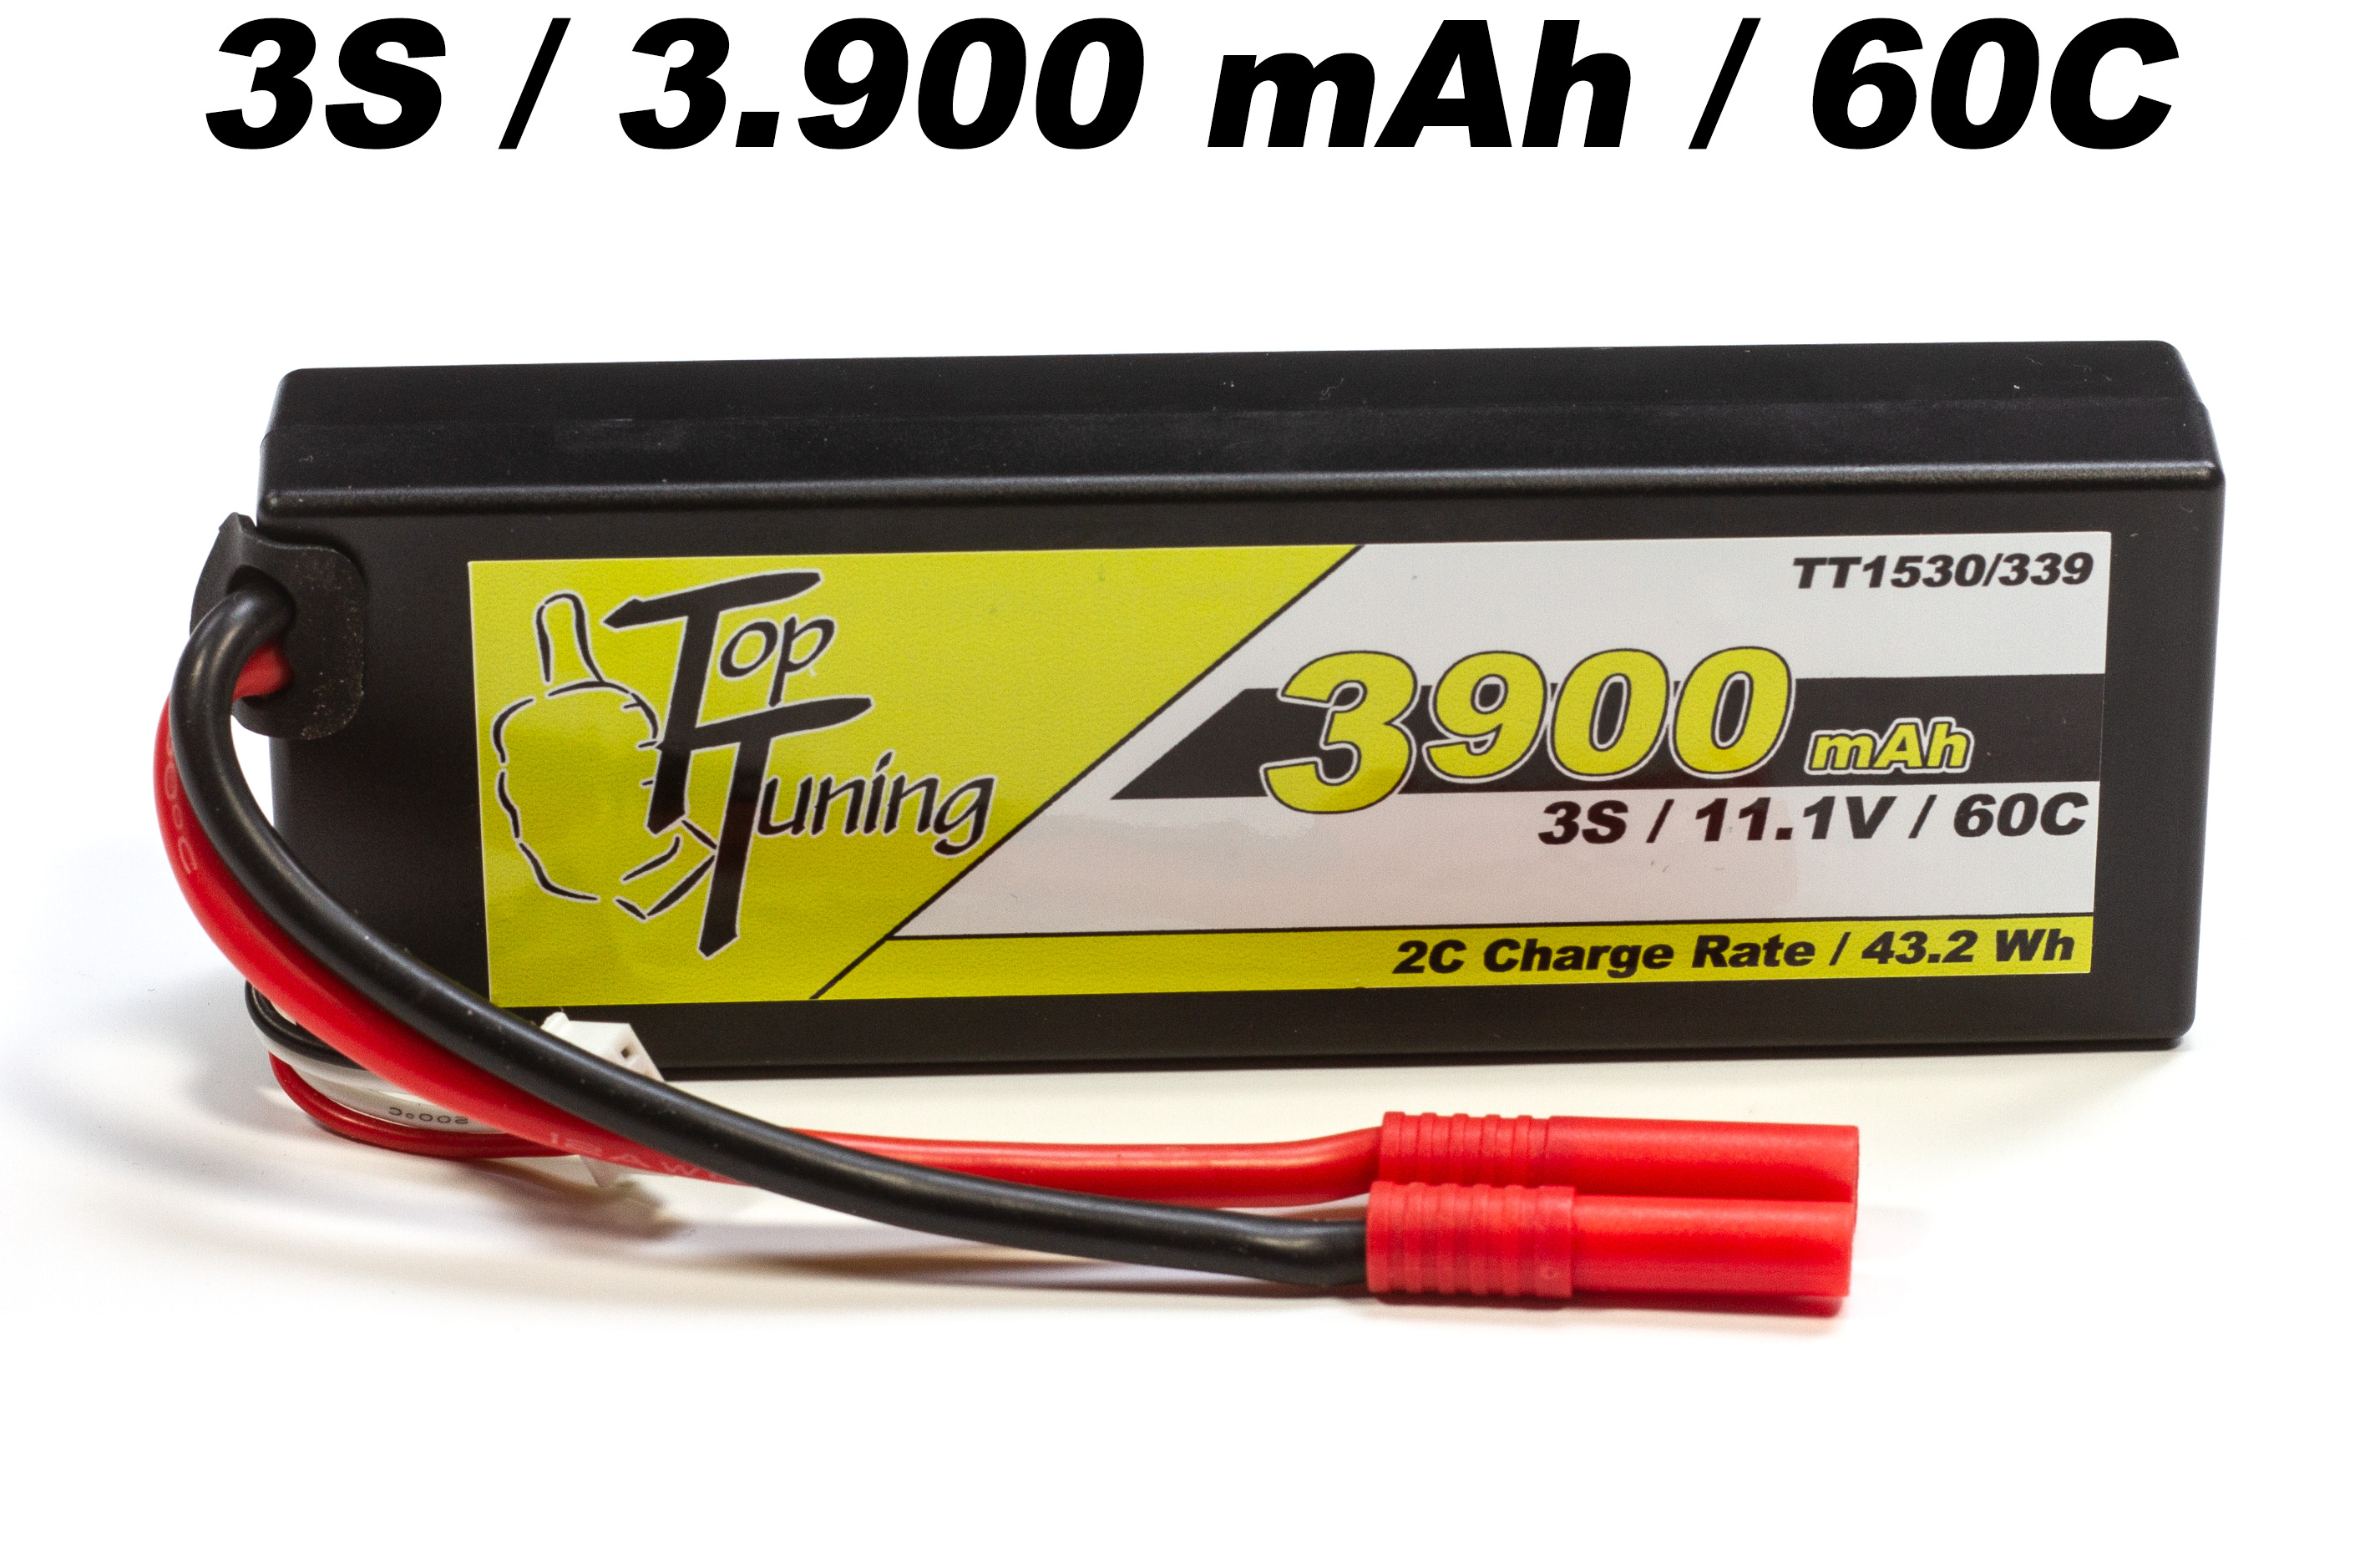 TT1530/339 Top Tuning 3900 mAh LiPo battery 3S, 11,1V Offer